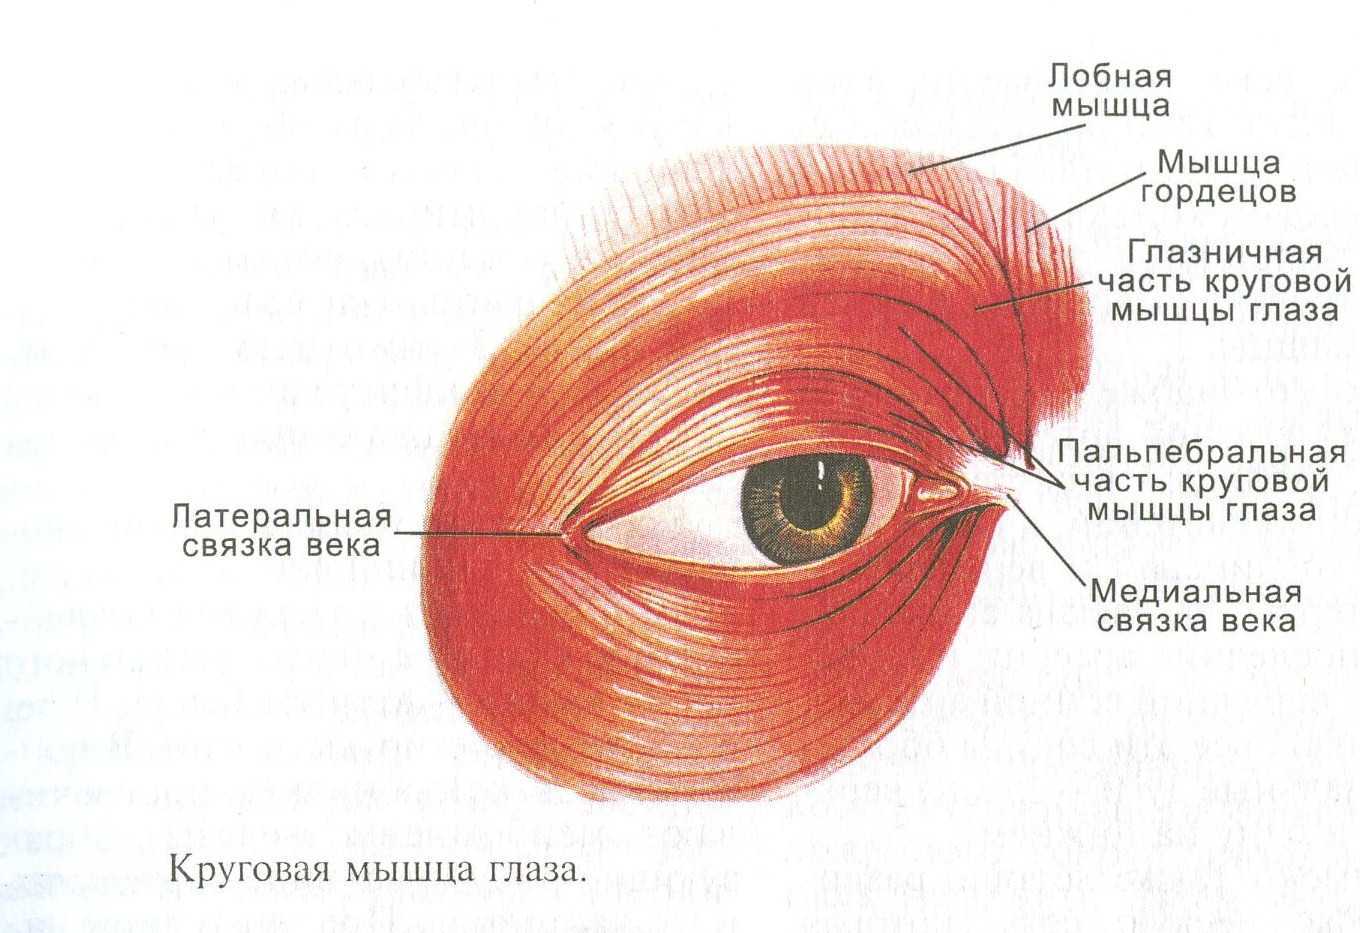 Строение глаза человека